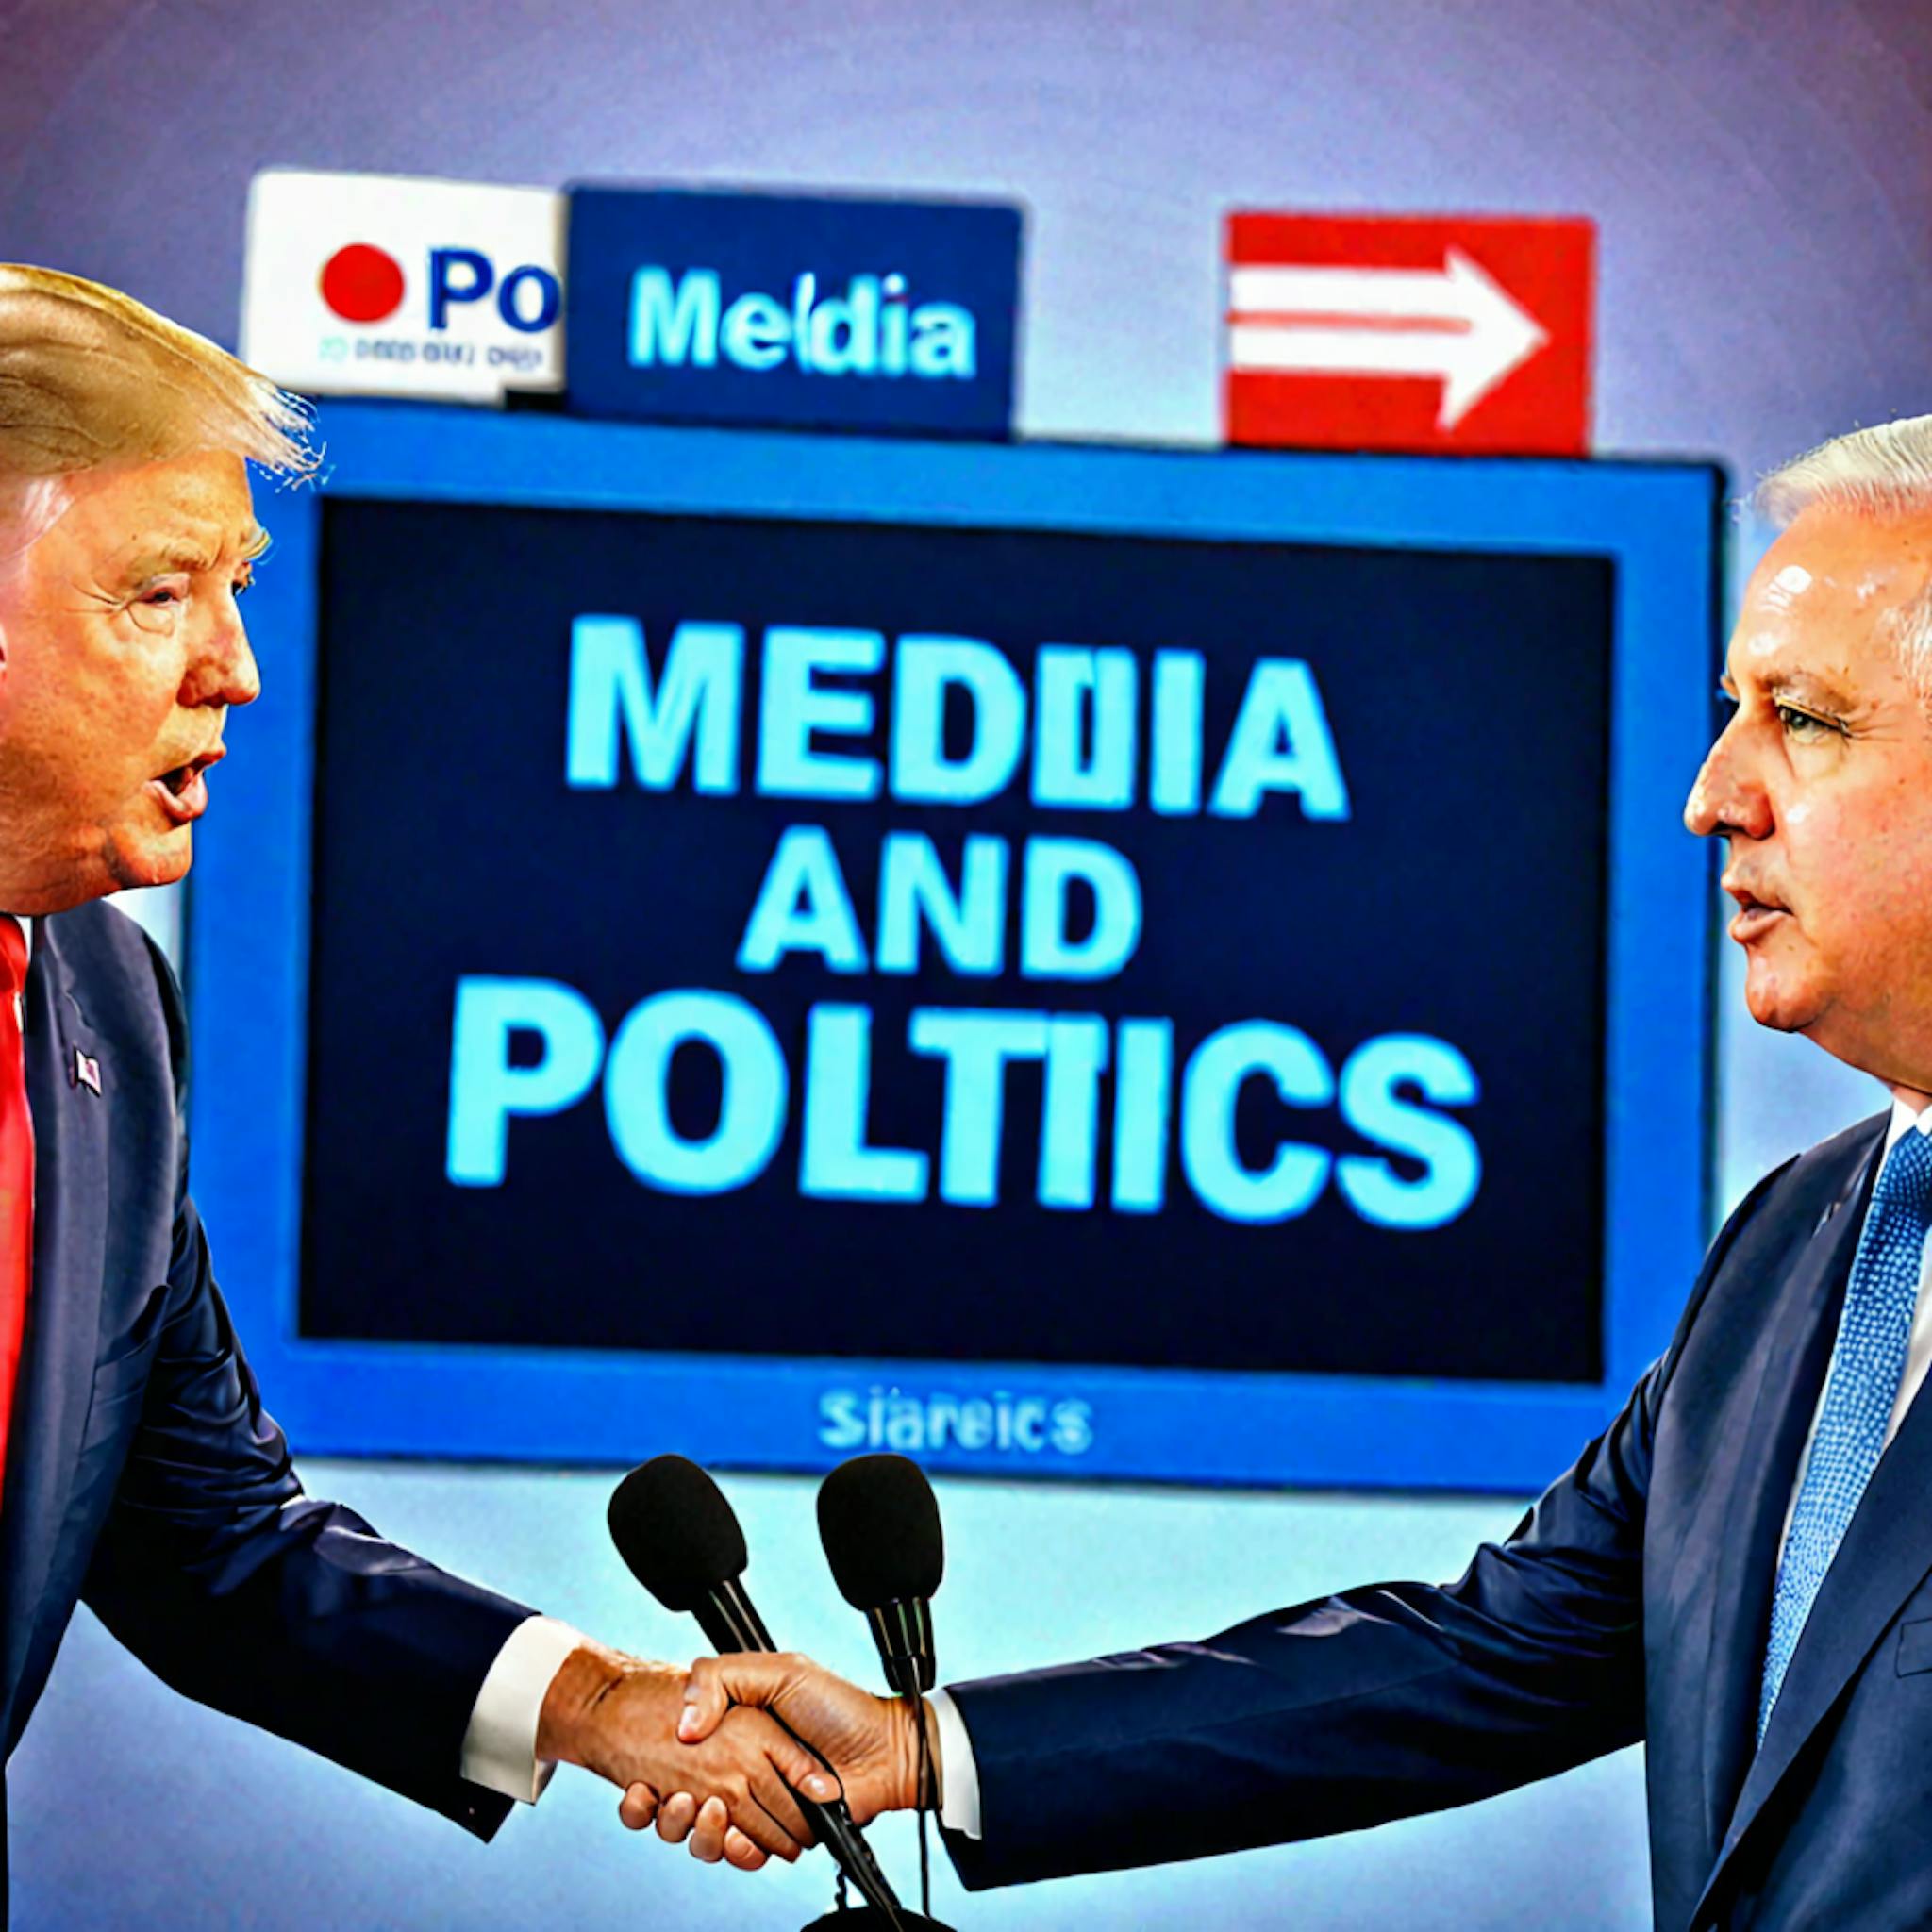 featured image - Clasificación multilingüe de posturas políticas generales de los medios: resumen e introducción